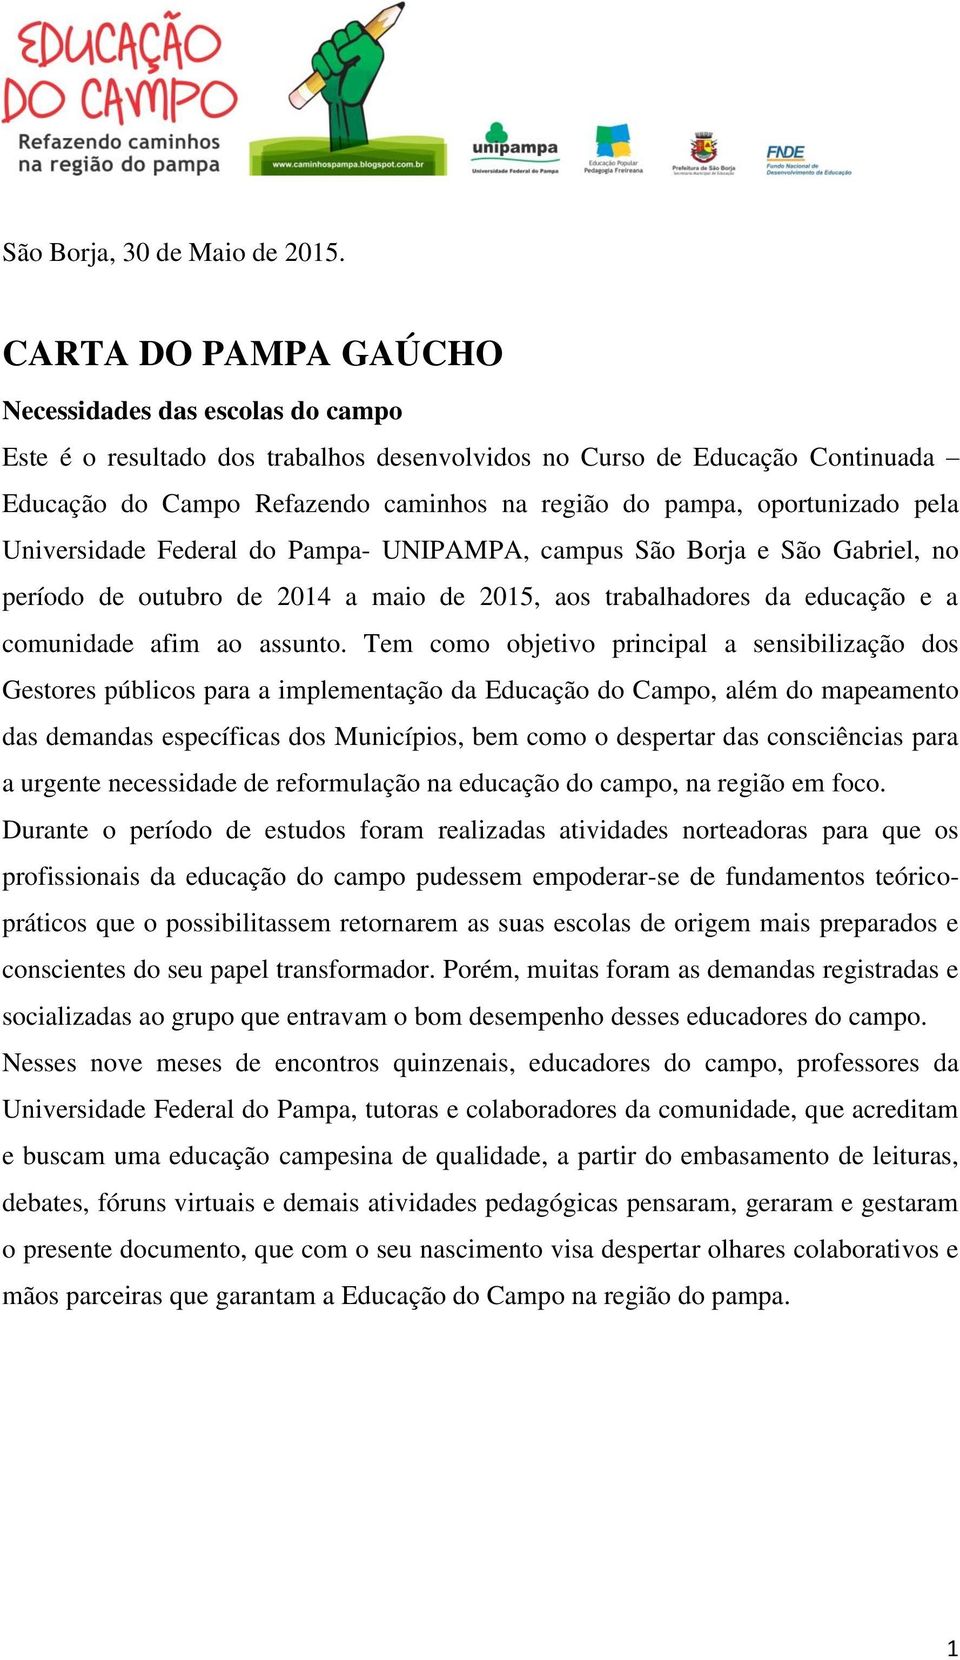 oportunizado pela Universidade Federal do Pampa- UNIPAMPA, campus São Borja e São Gabriel, no período de outubro de 2014 a maio de 2015, aos trabalhadores da educação e a comunidade afim ao assunto.